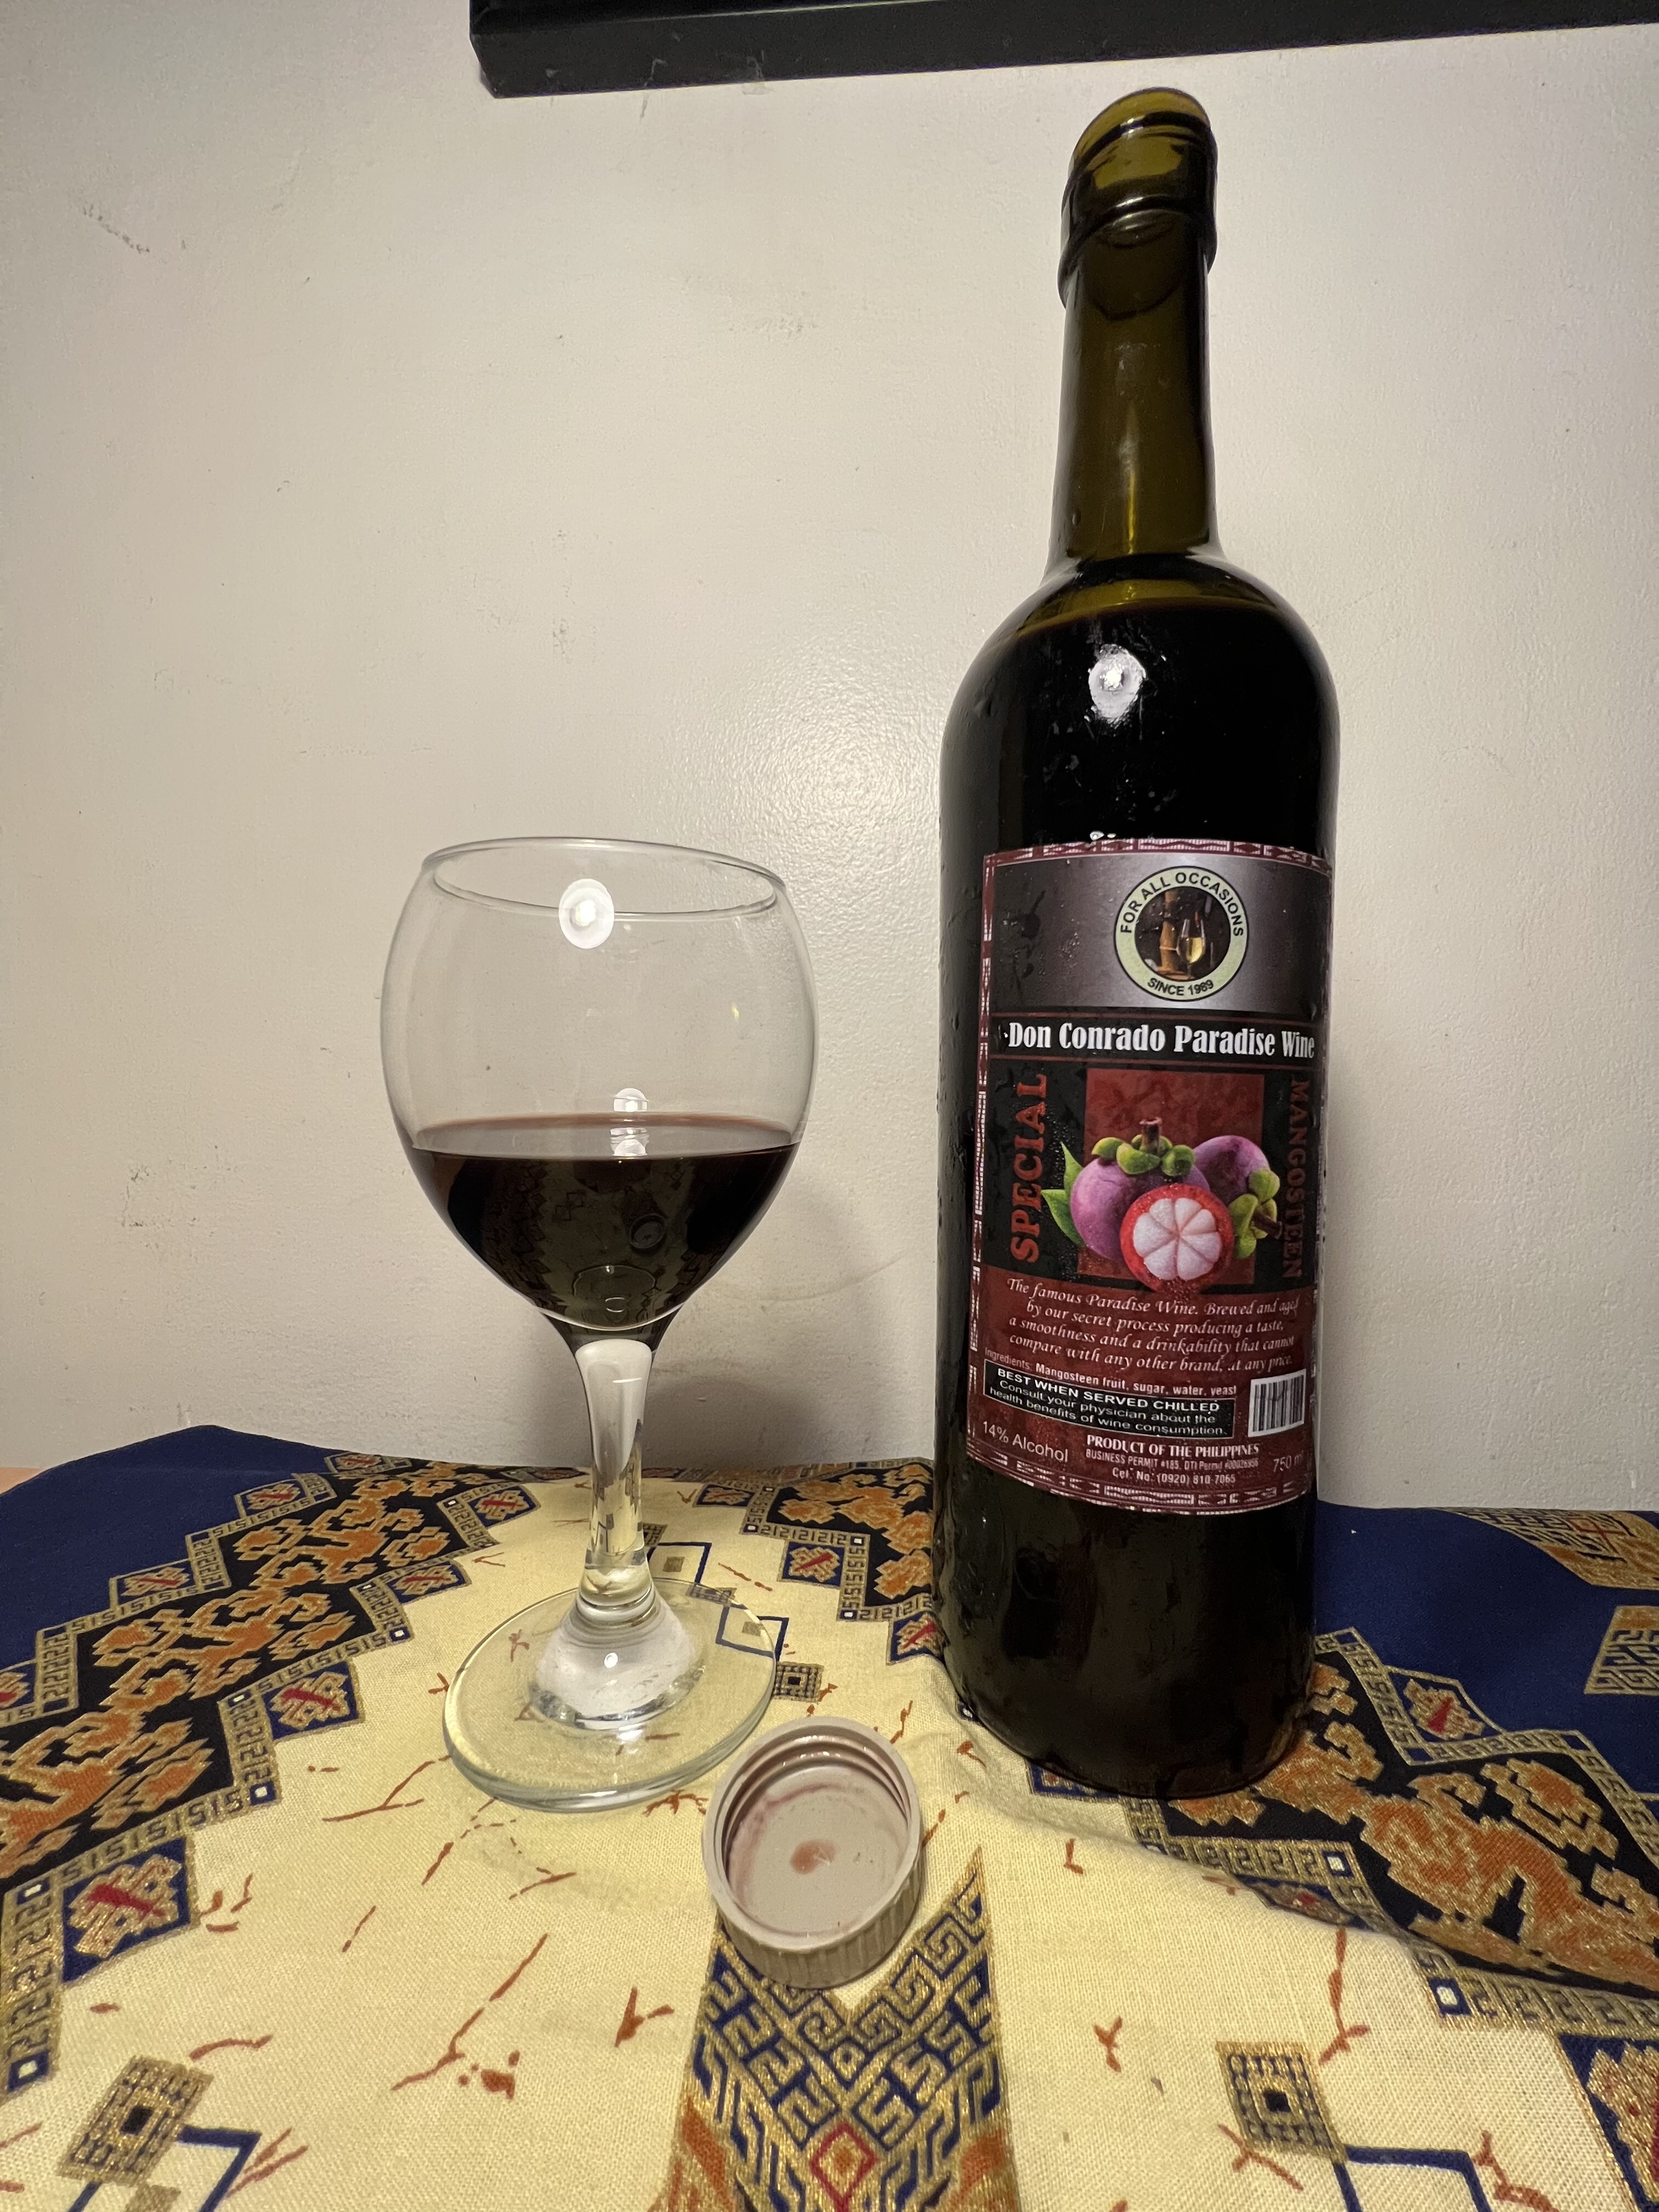 Wine manggis memiliki warna merah gelap mirip anggur merah asli